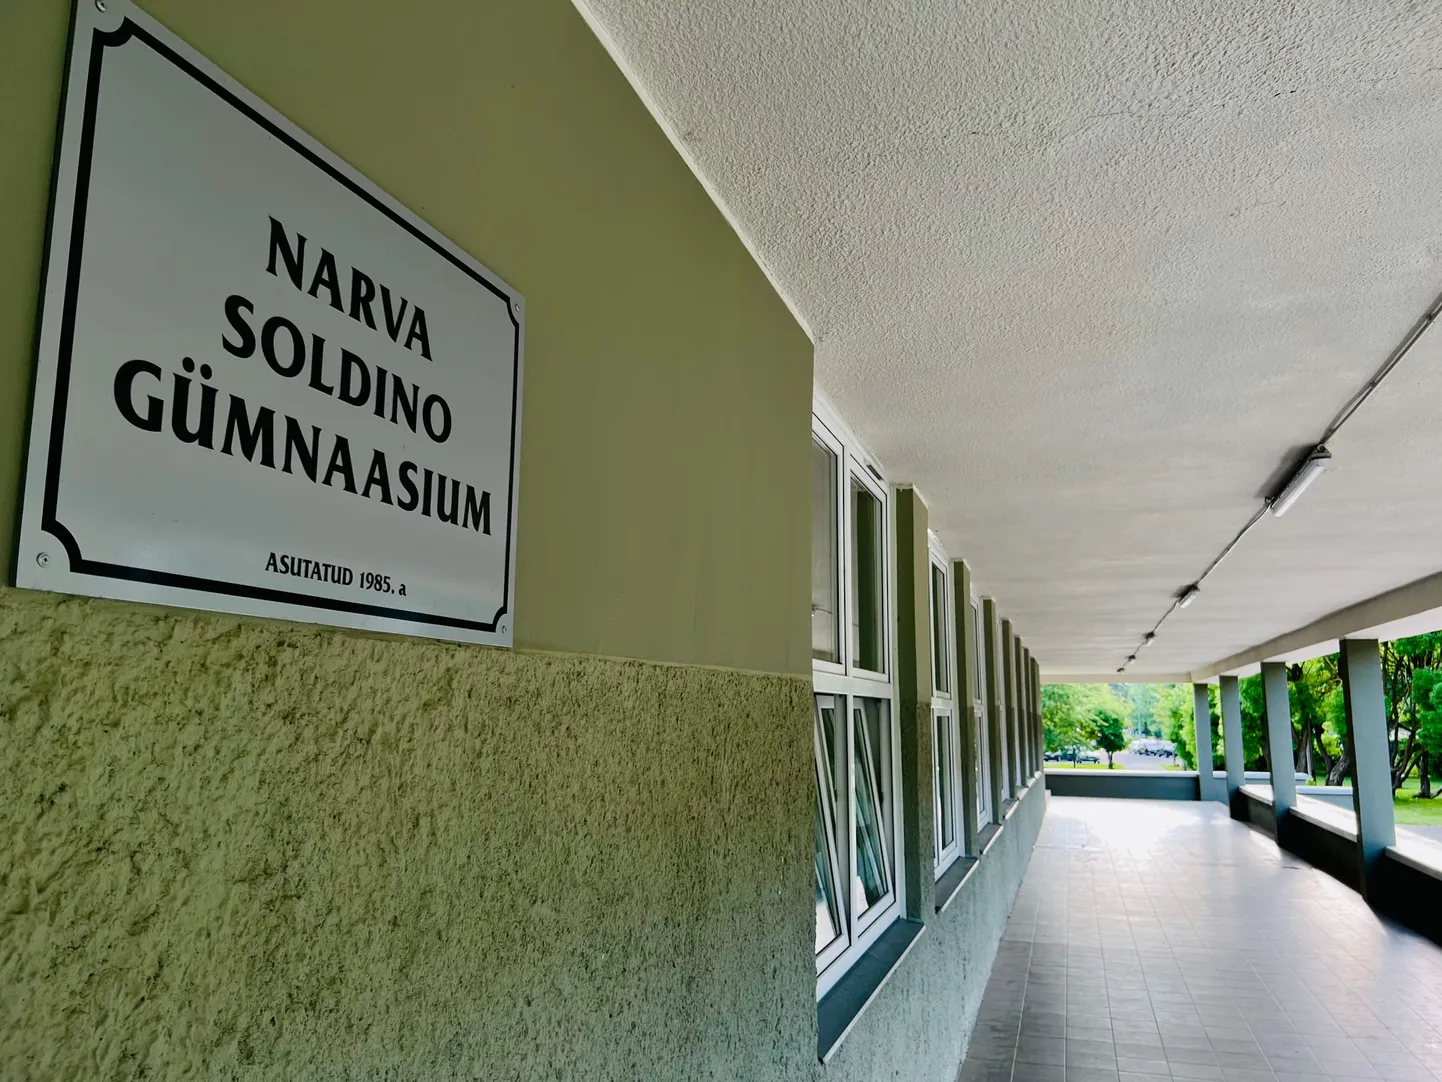 Käesolevast õppeaastast sai Narva Soldino koolist põhikool, ent varsti võib see õppeasutus sootuks uksed sulgeda. See on üks Narva uuemaid koole, ent vähem kui neljakümne aastaga on hoone ja selle tehnosüsteemid kõvasti kulunud.